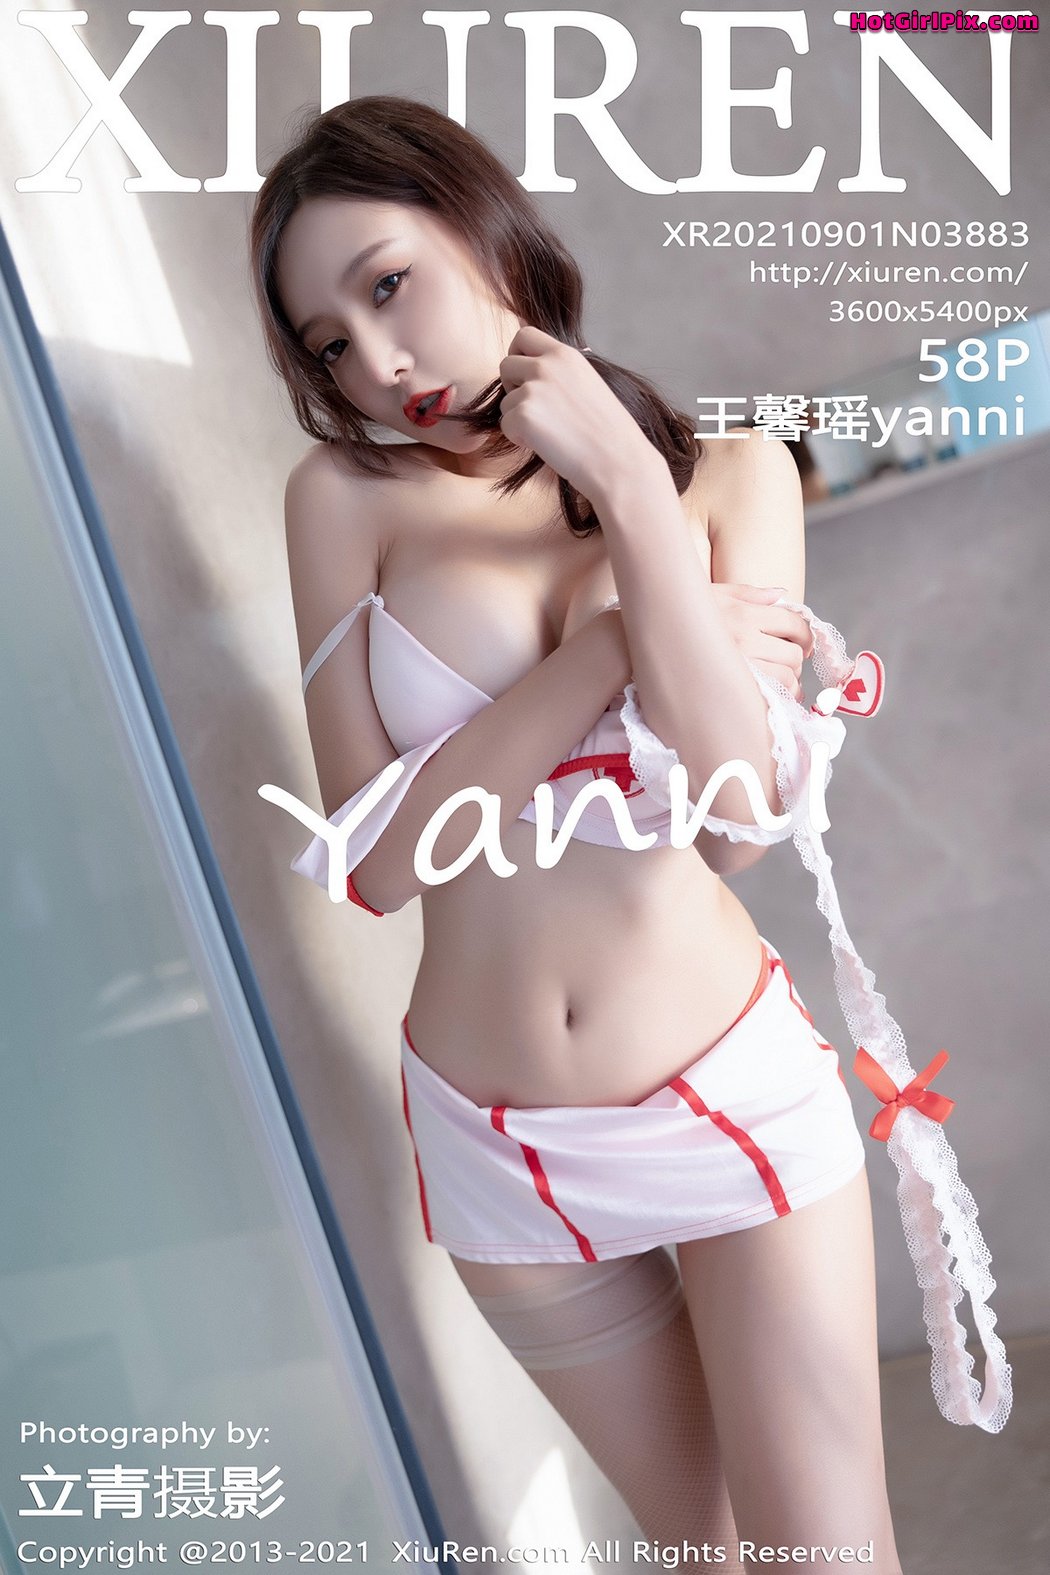 [XIUREN] No.3883 Wang Xin Yao 王馨瑶yanni Cover Photo